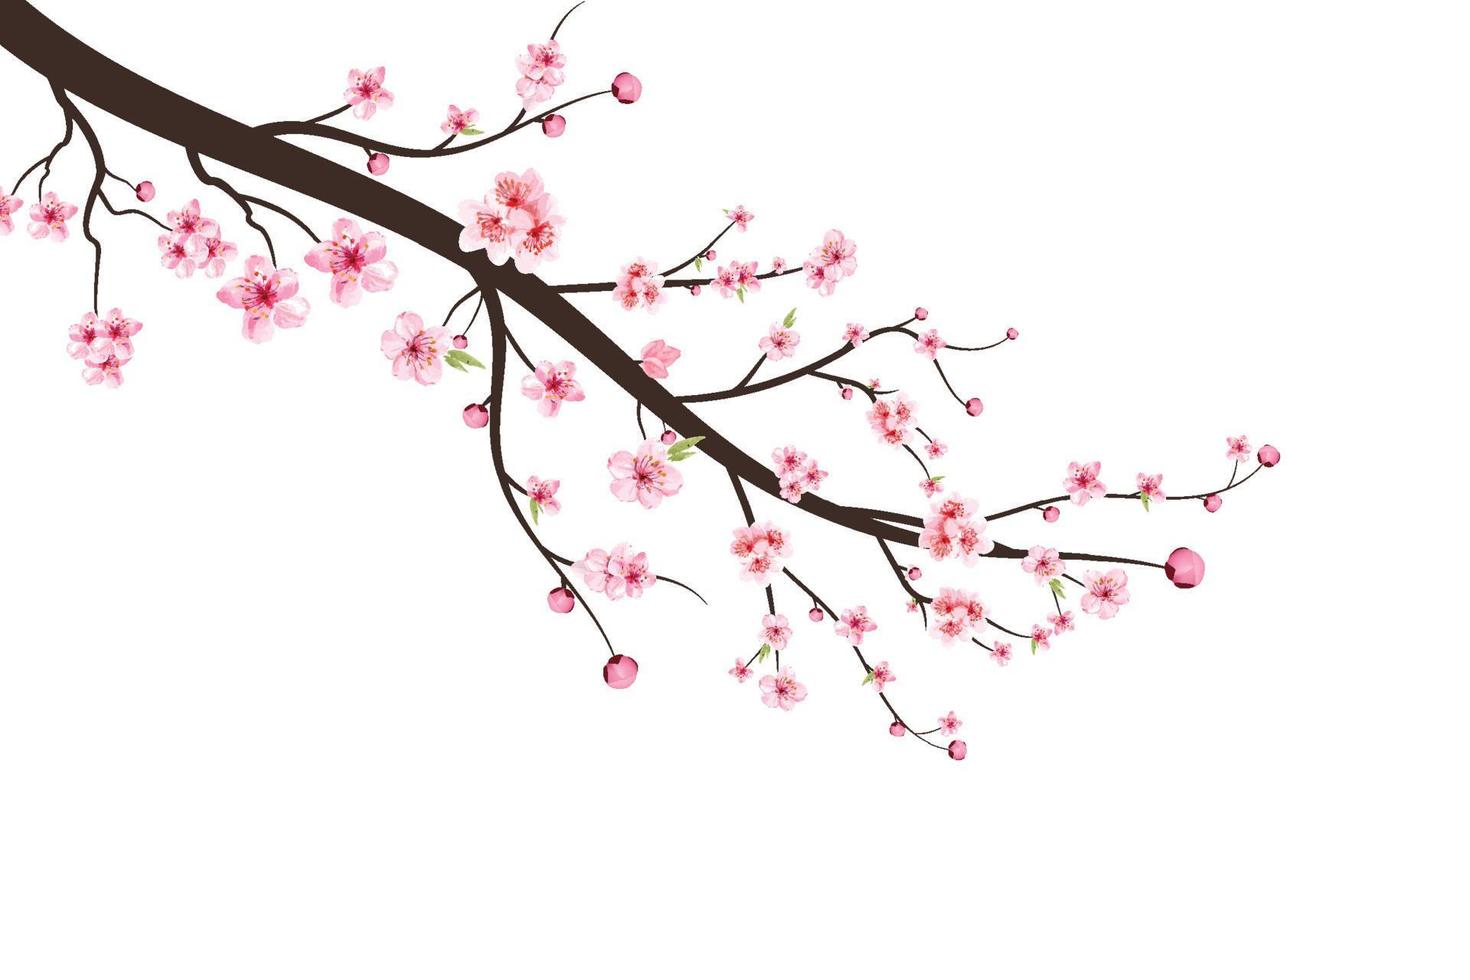 rama de flor de cerezo con flor de sakura. sakura sobre fondo blanco. vector de flor de cerezo acuarela. Fondo de flor de sakura rosa. capullo de cereza acuarela.